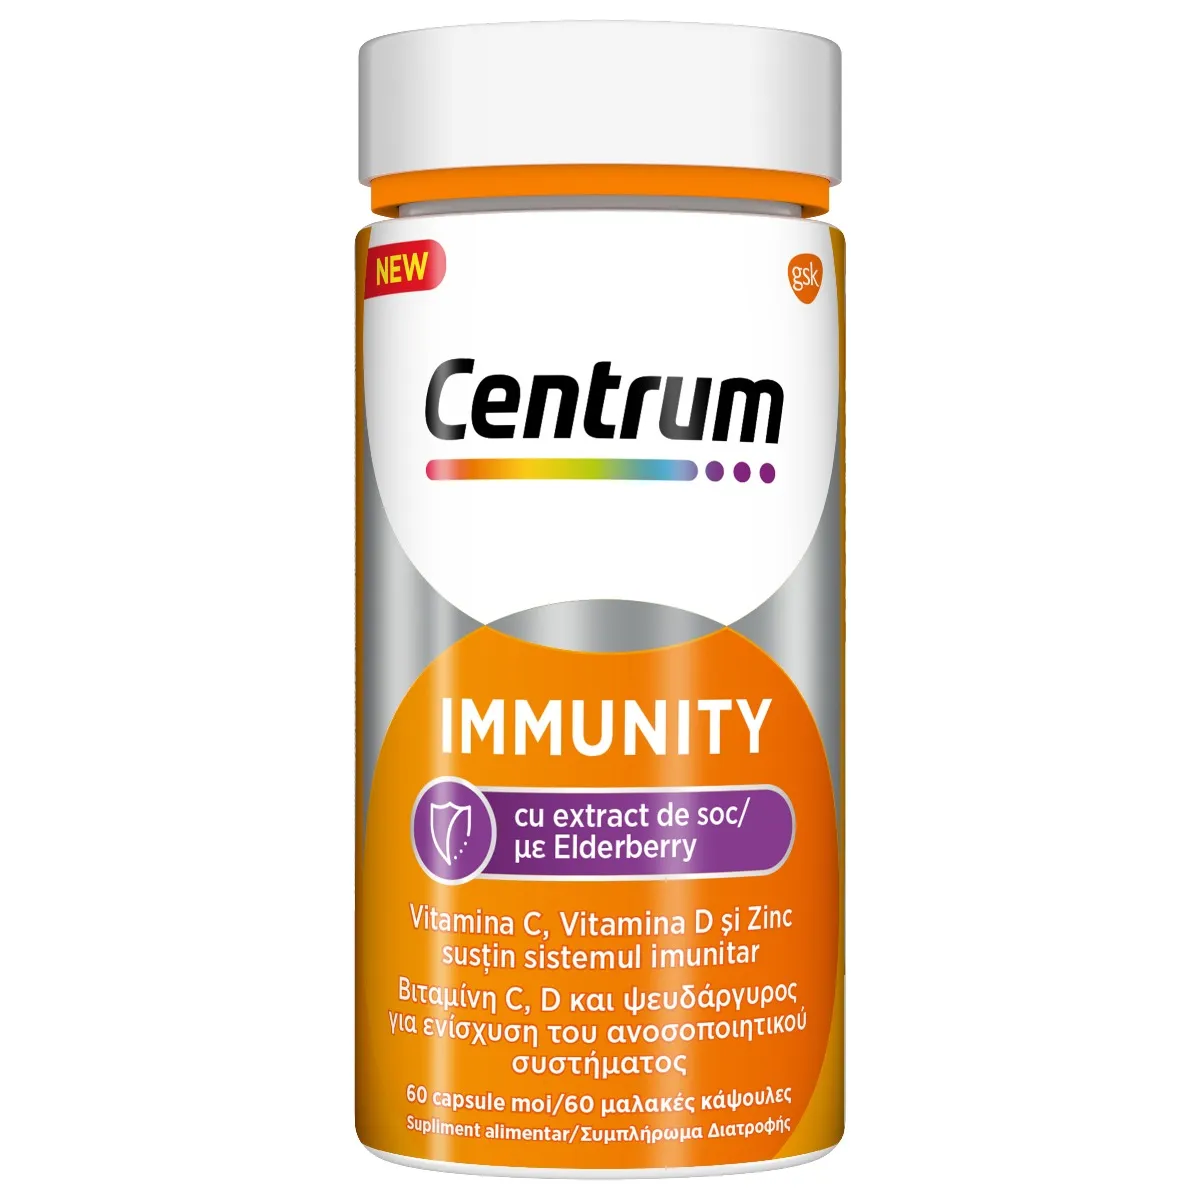 Immunity cu extract de soc, 60 capsule, Centrum